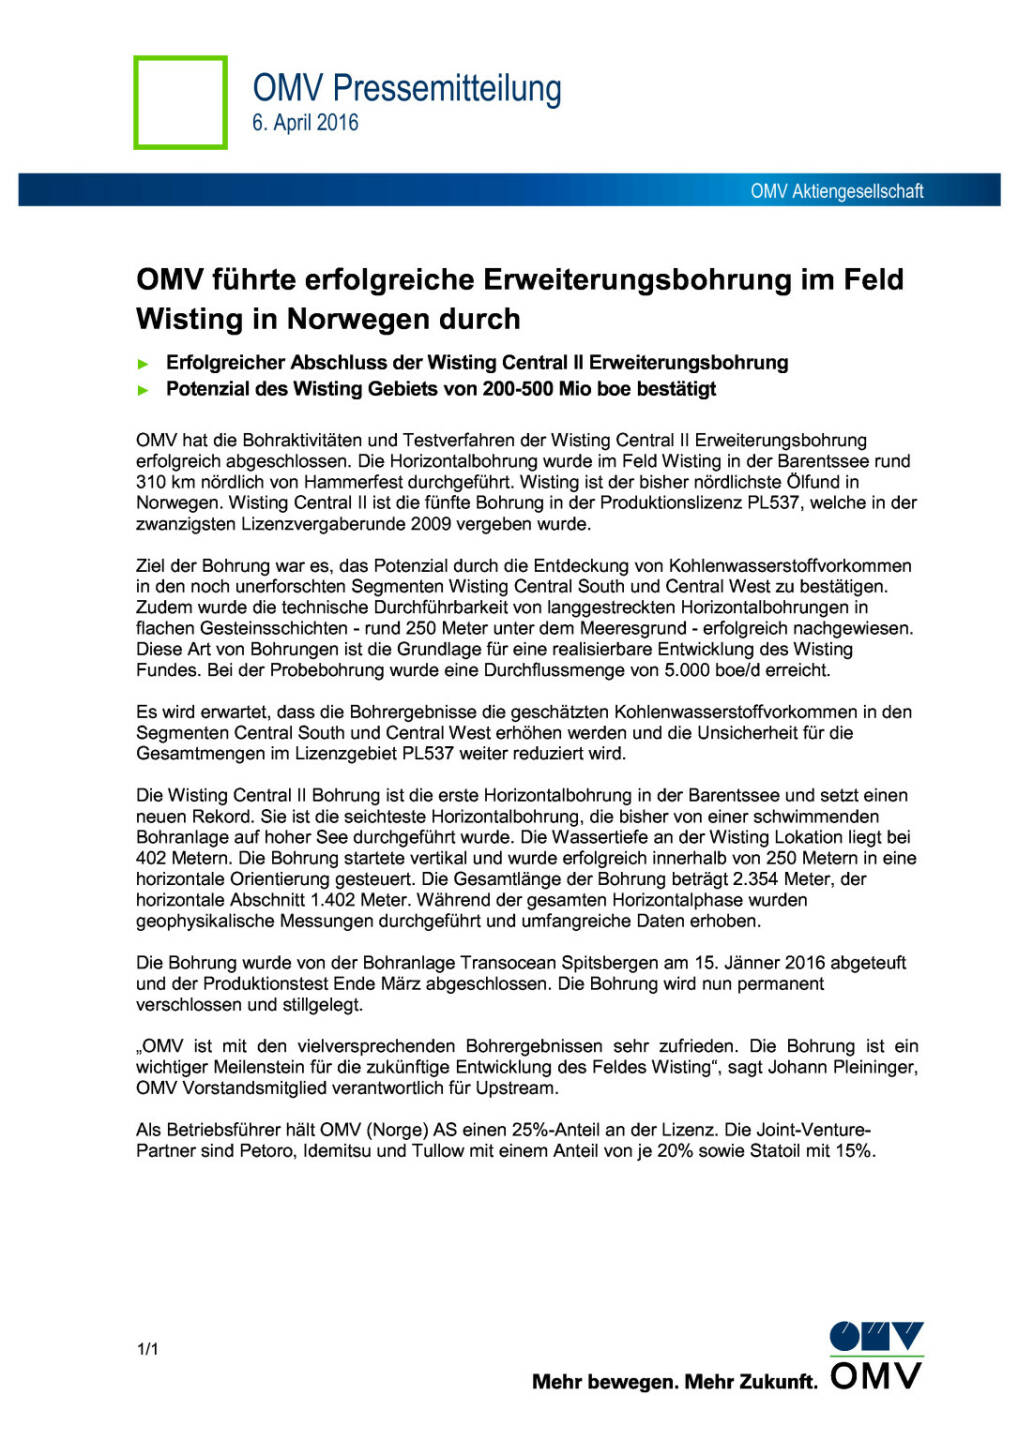 OMV: erfolgreiche Erweiterungsbohrung in Norwegen, Seite 1/2, komplettes Dokument unter http://boerse-social.com/static/uploads/file_853_omv_erfolgreiche_erweiterungsbohrung_in_norwegen.pdf